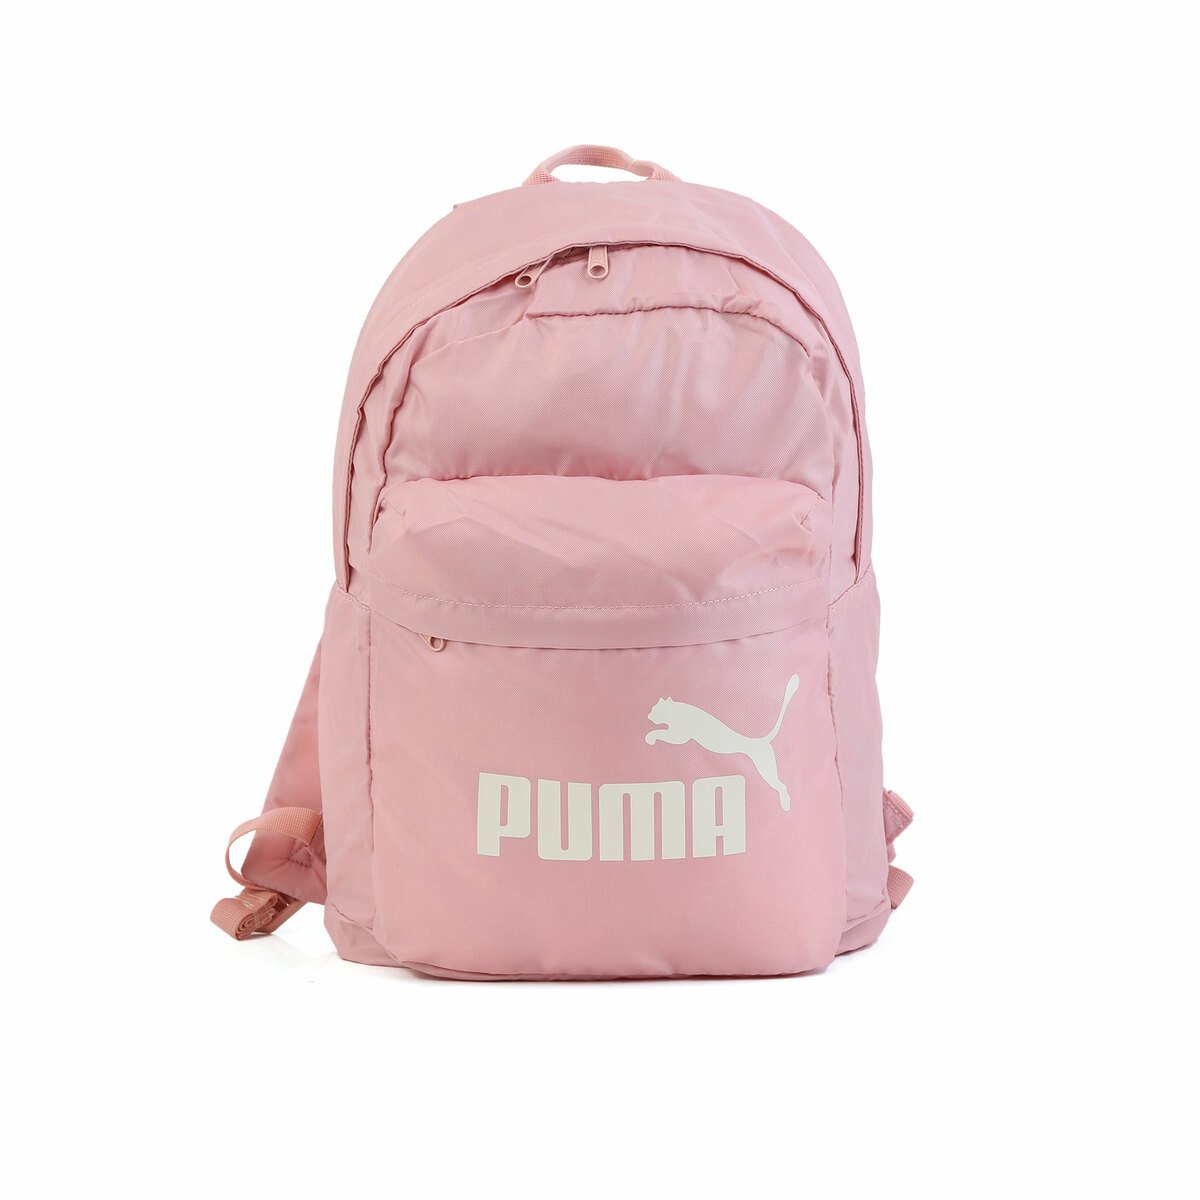 Puma Backpack 07575207